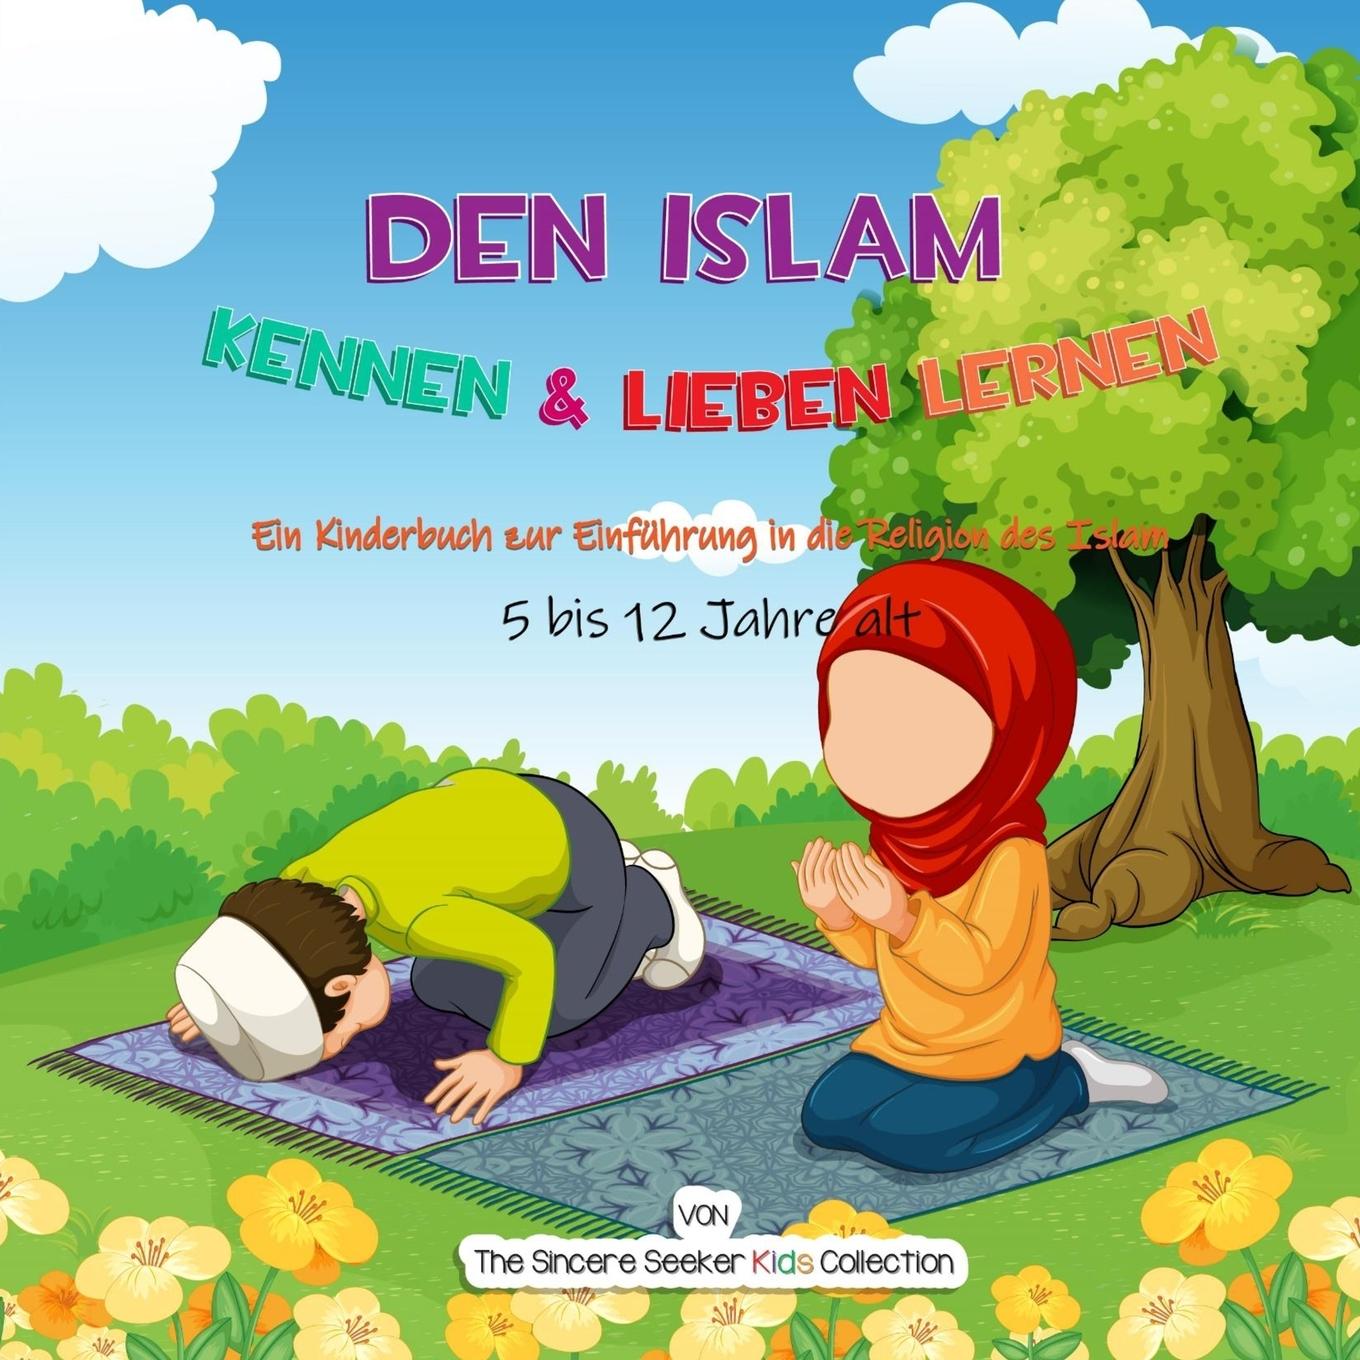 Kniha Den Islam kennen & lieben lernen 